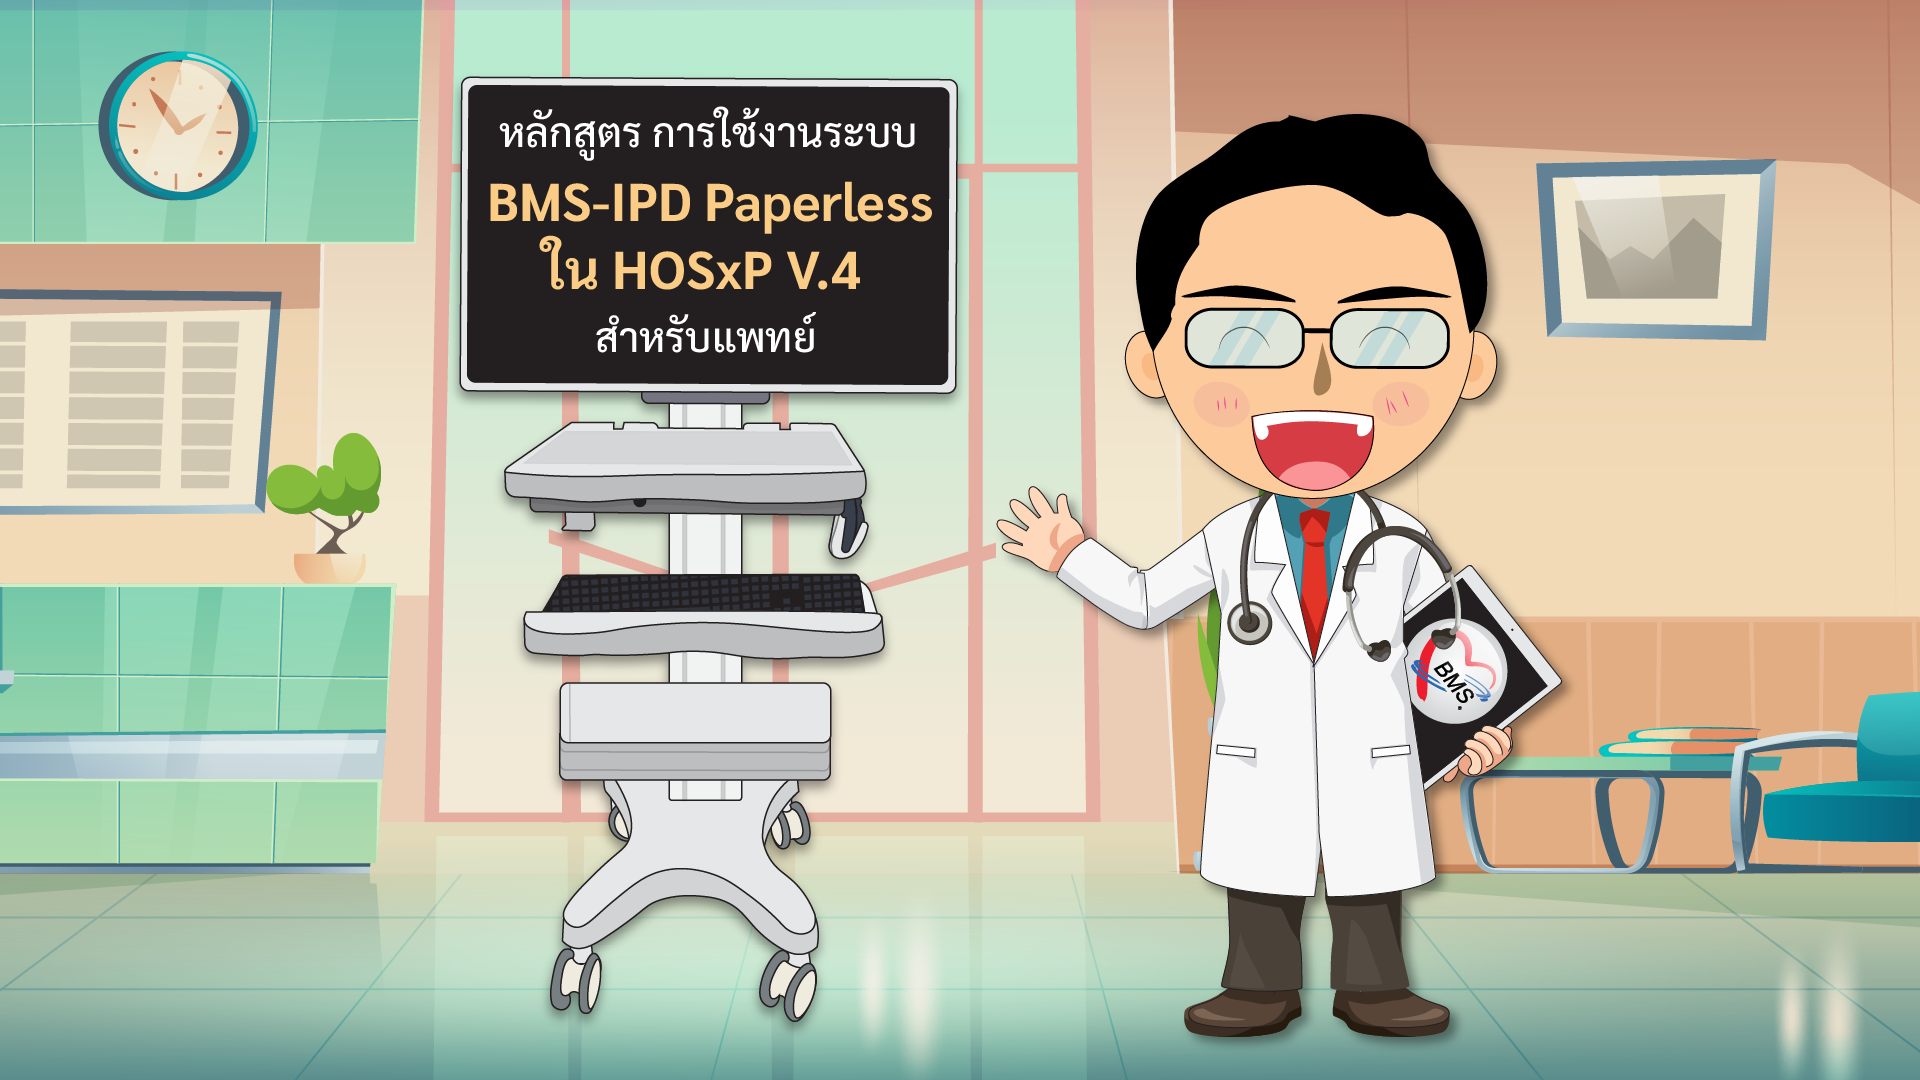 หลักสูตร การใช้งานระบบ BMS-IPD Paperless ใน HOSxP V.4  สำหรับแพทย์